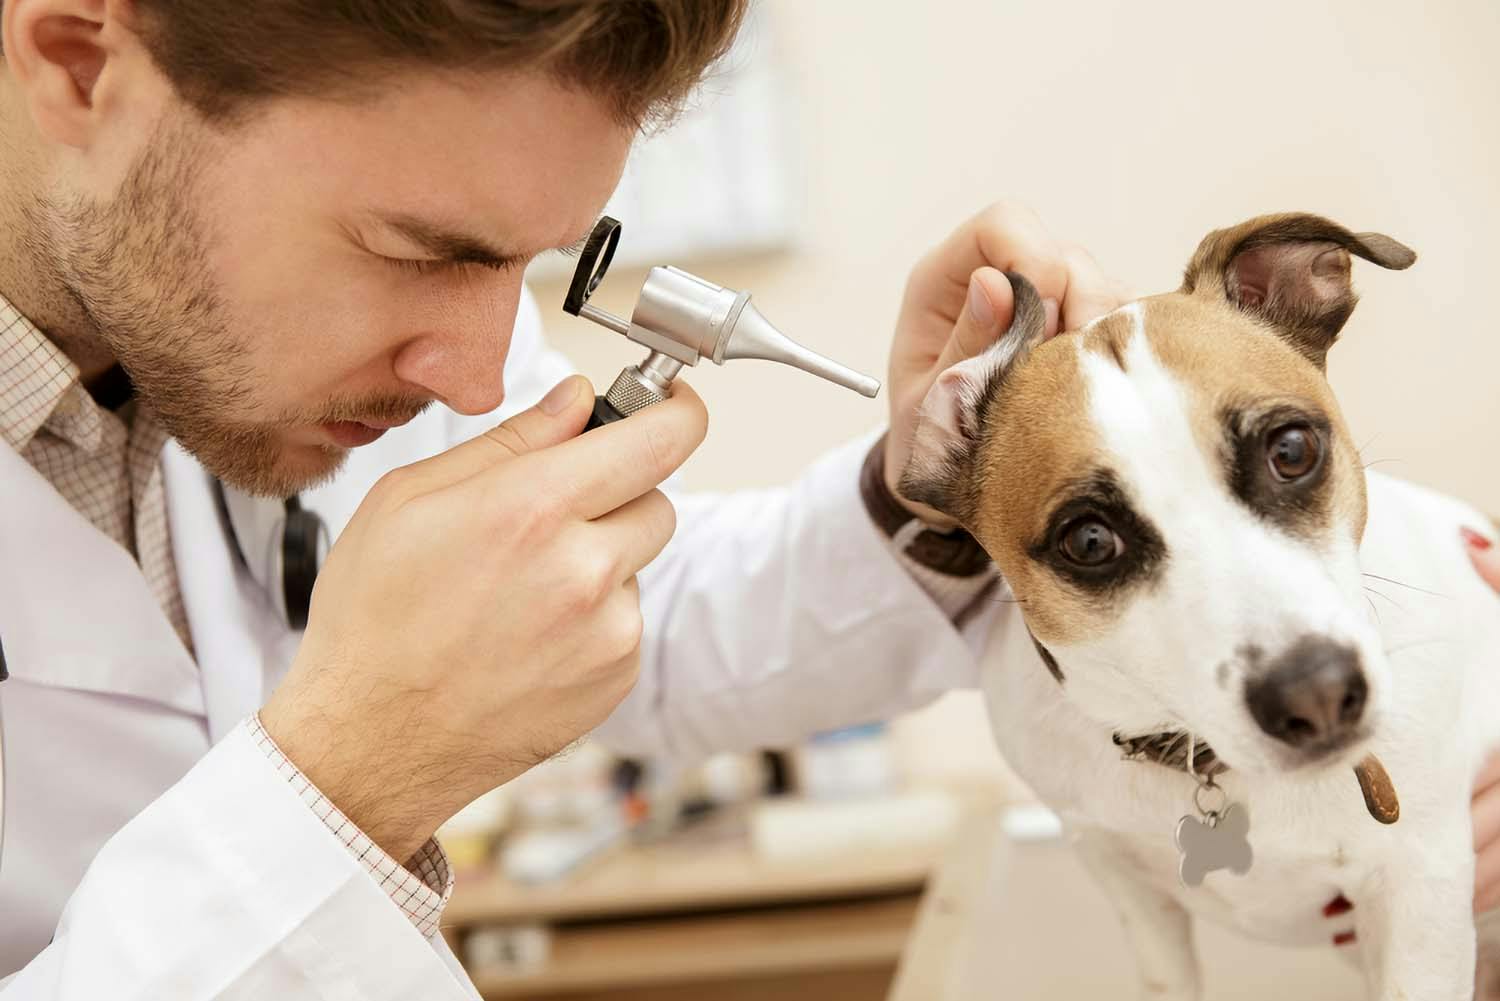 犬の耳が臭い原因は 考えられる病気と対処法について解説 獣医師監修 わんクォール